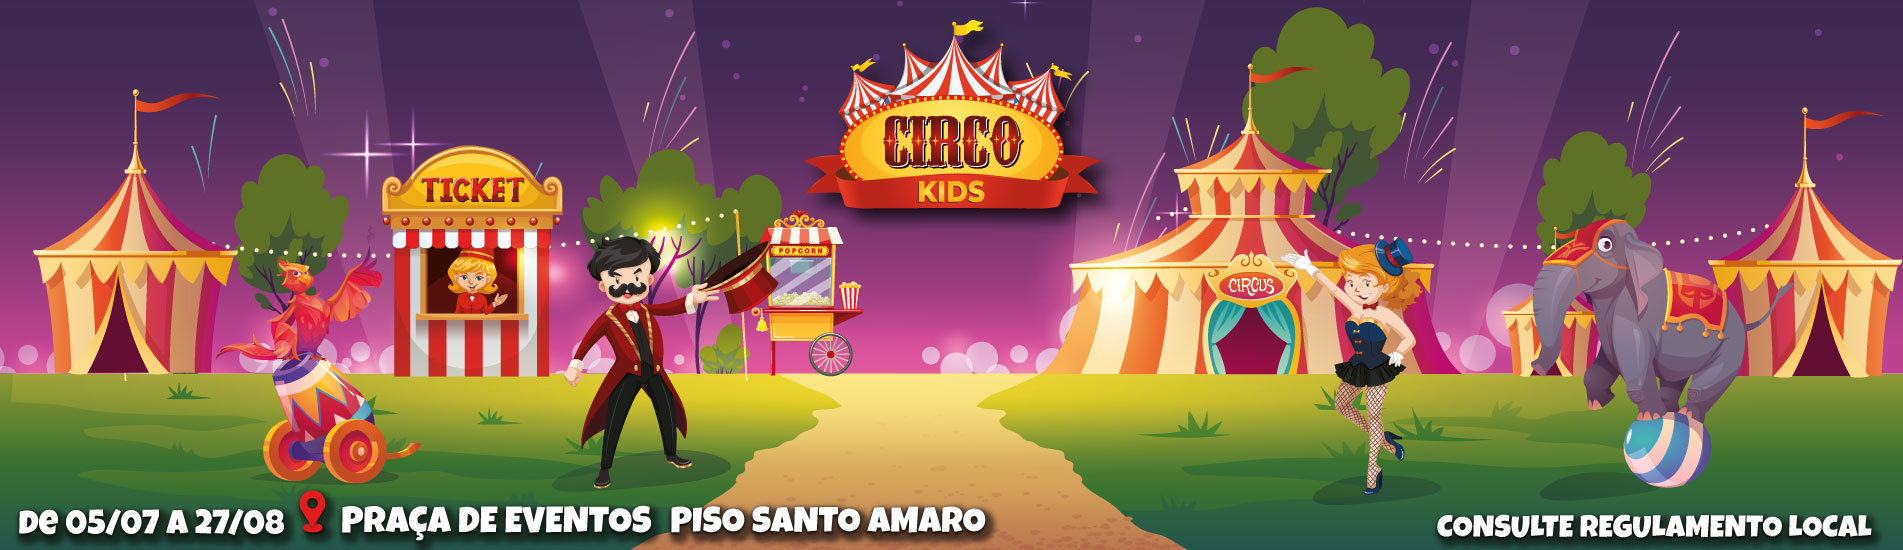 Circo Kids